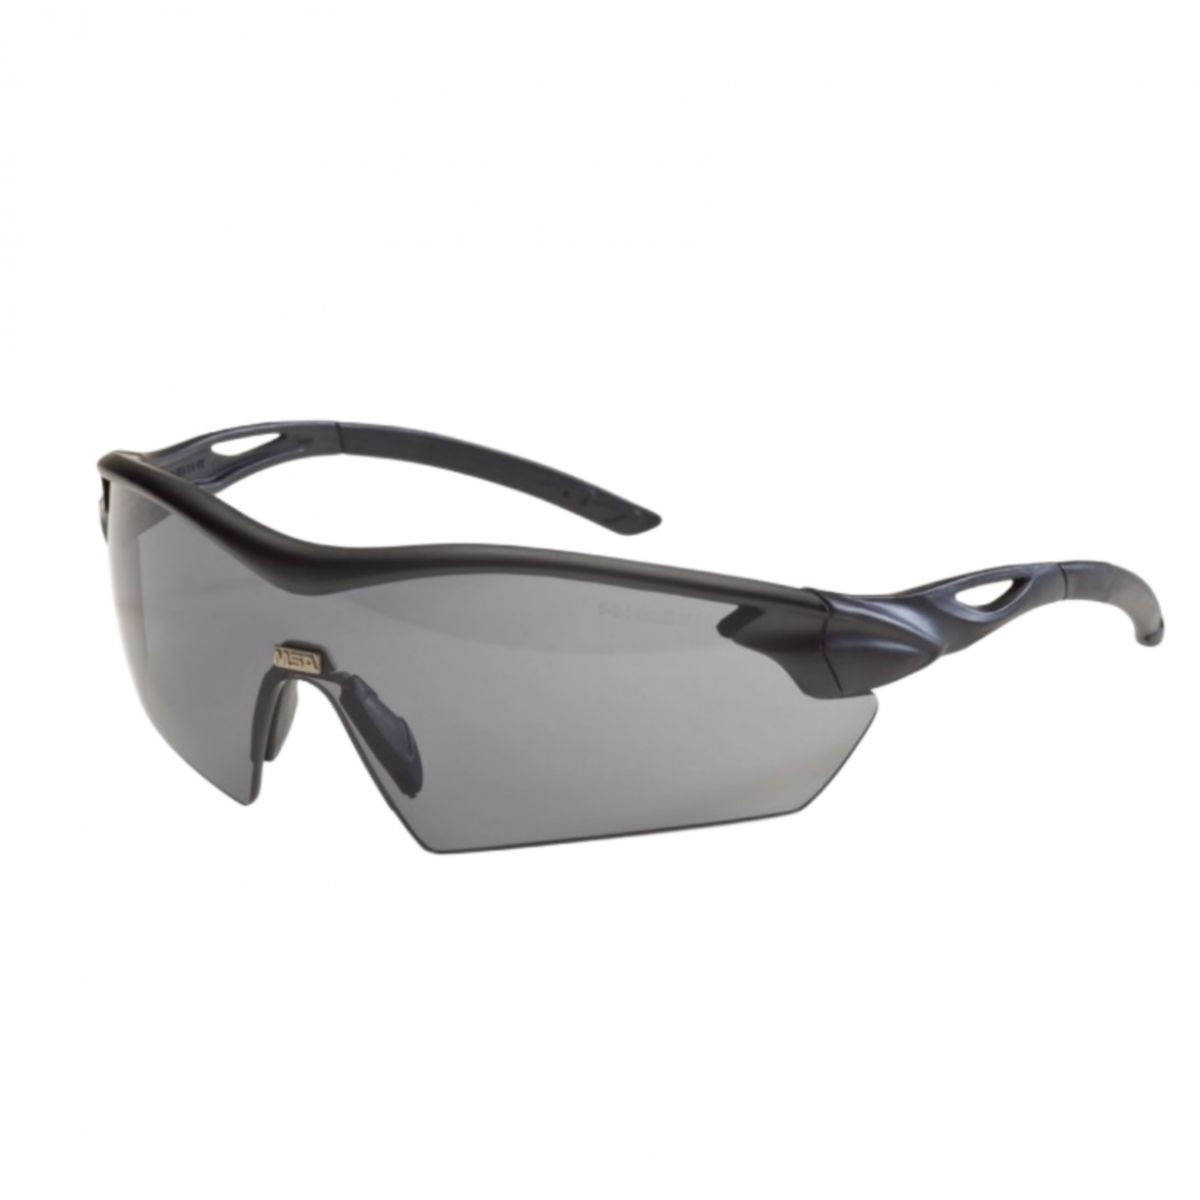 Тактические очки MSA Sordin Racers с покрытием Sightgard. Одинарная линза. Черные